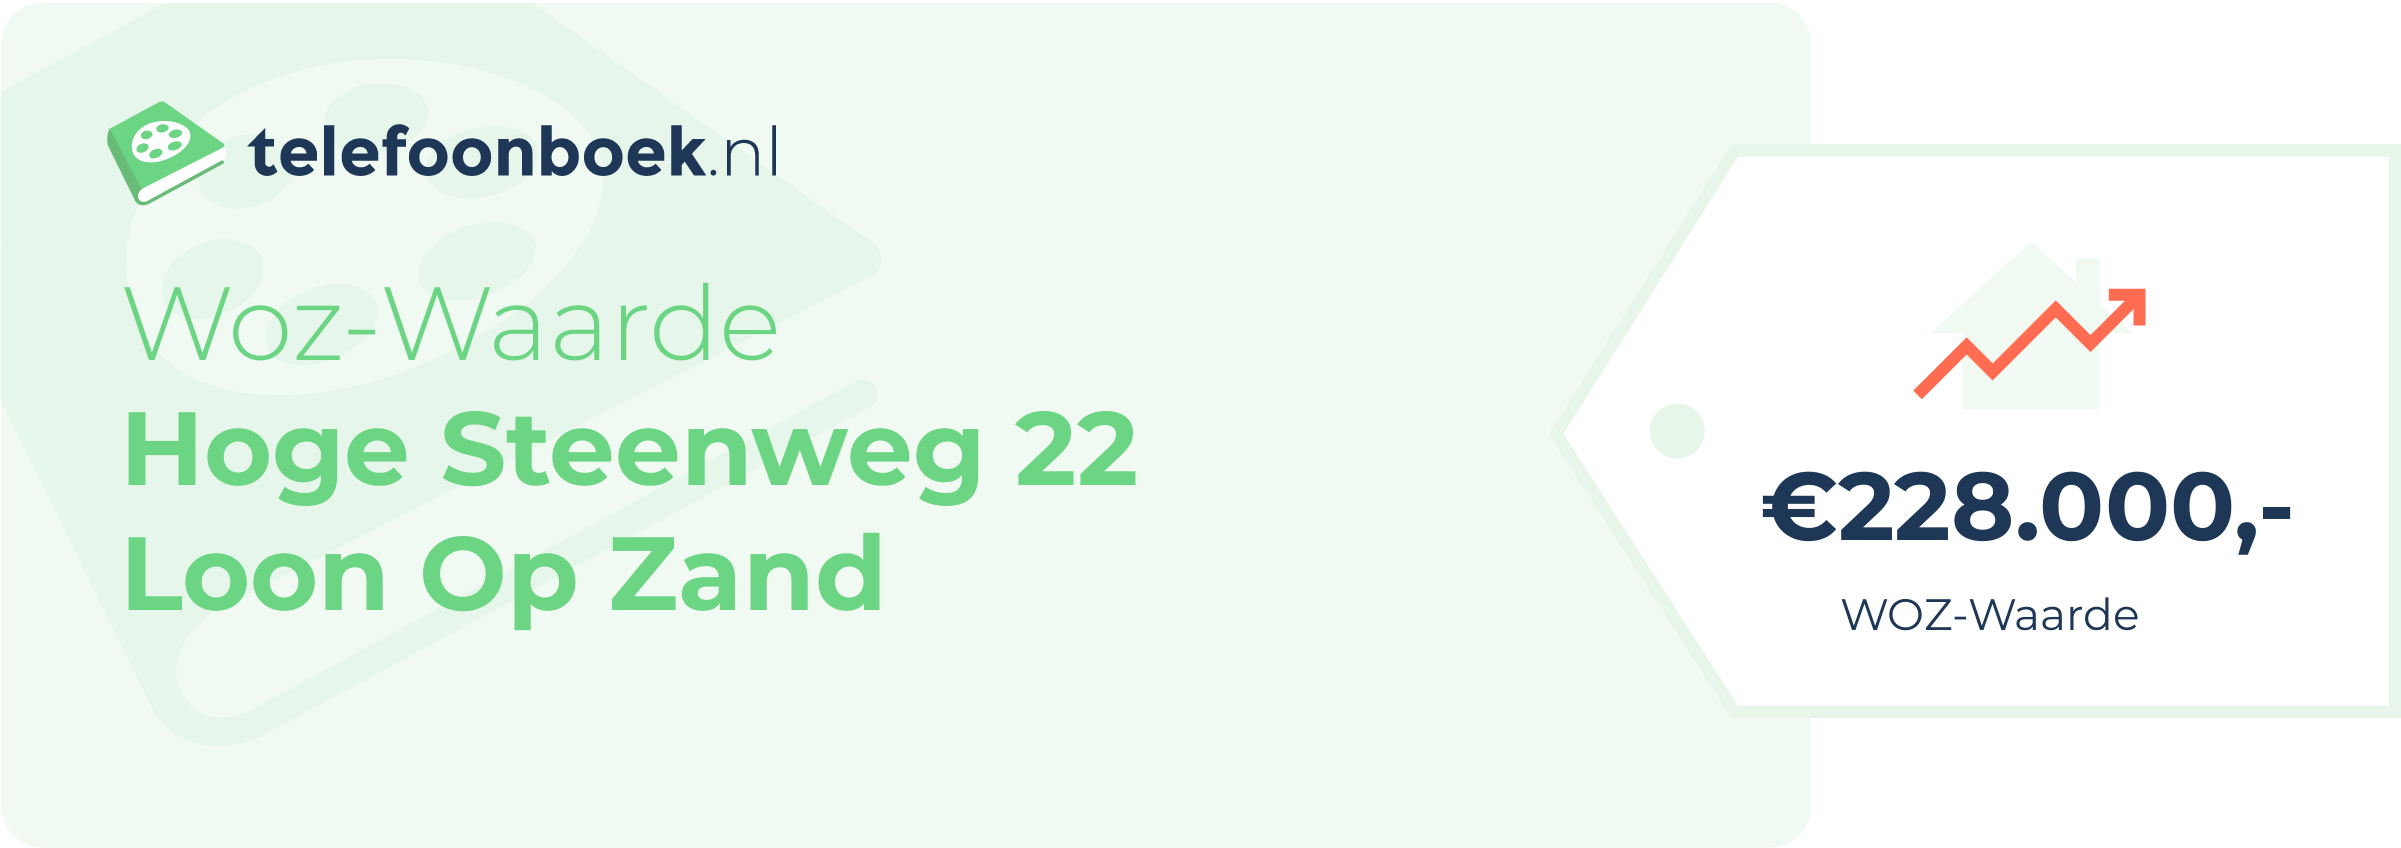 WOZ-waarde Hoge Steenweg 22 Loon Op Zand